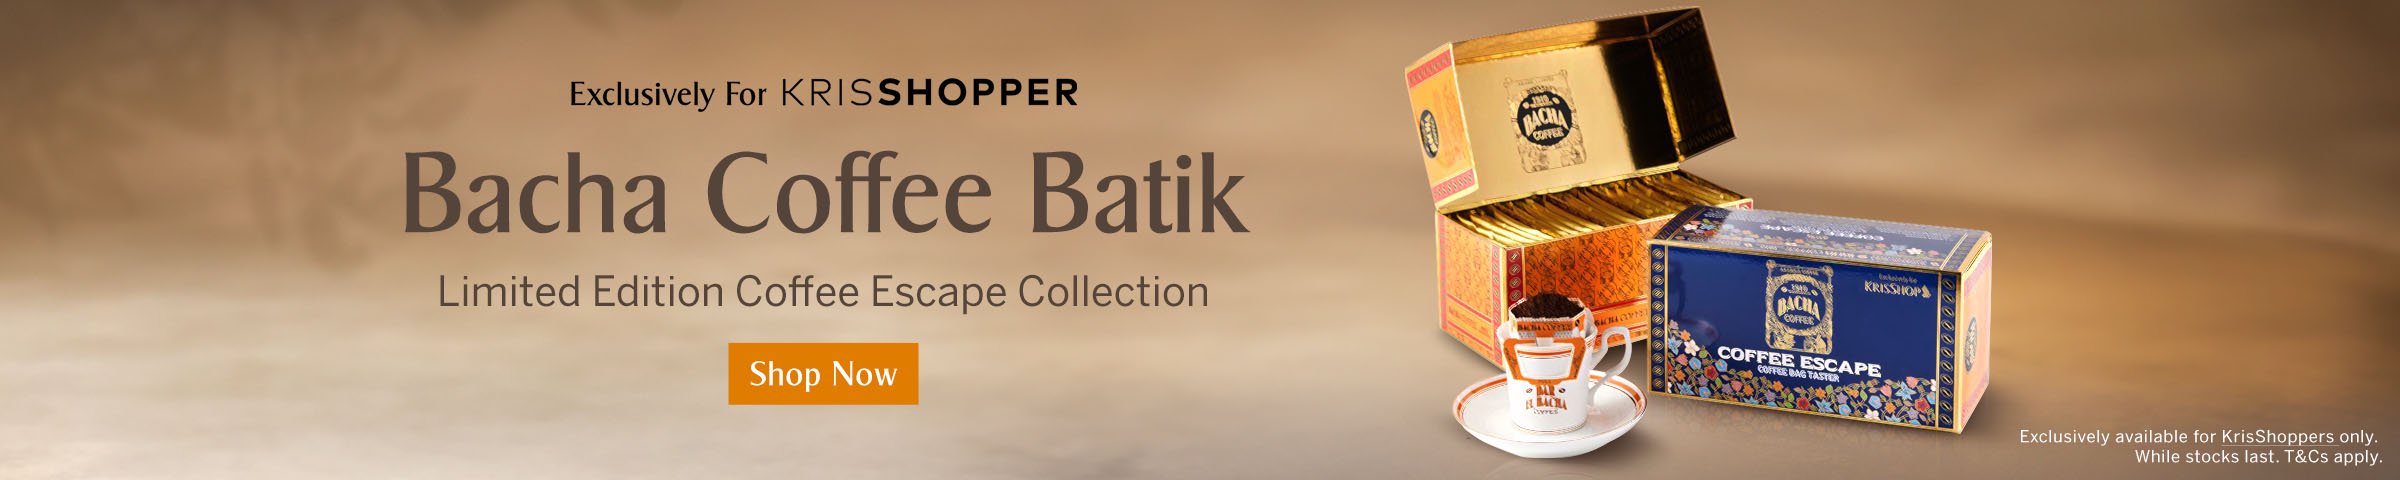 KrisShopper Exclusive - Bacha Coffee Batik